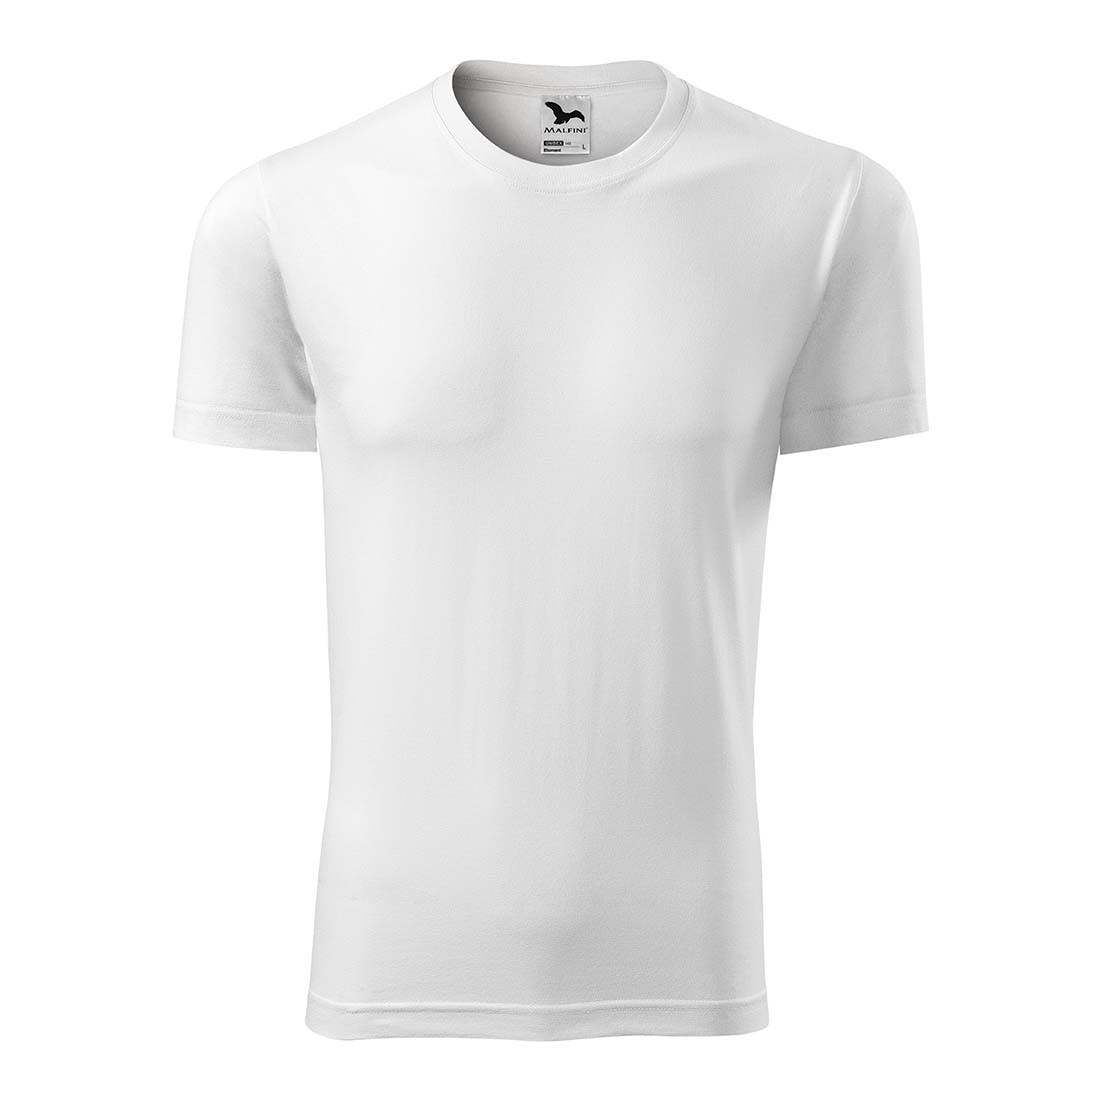 Tee-shirt unisex - Les vêtements de protection